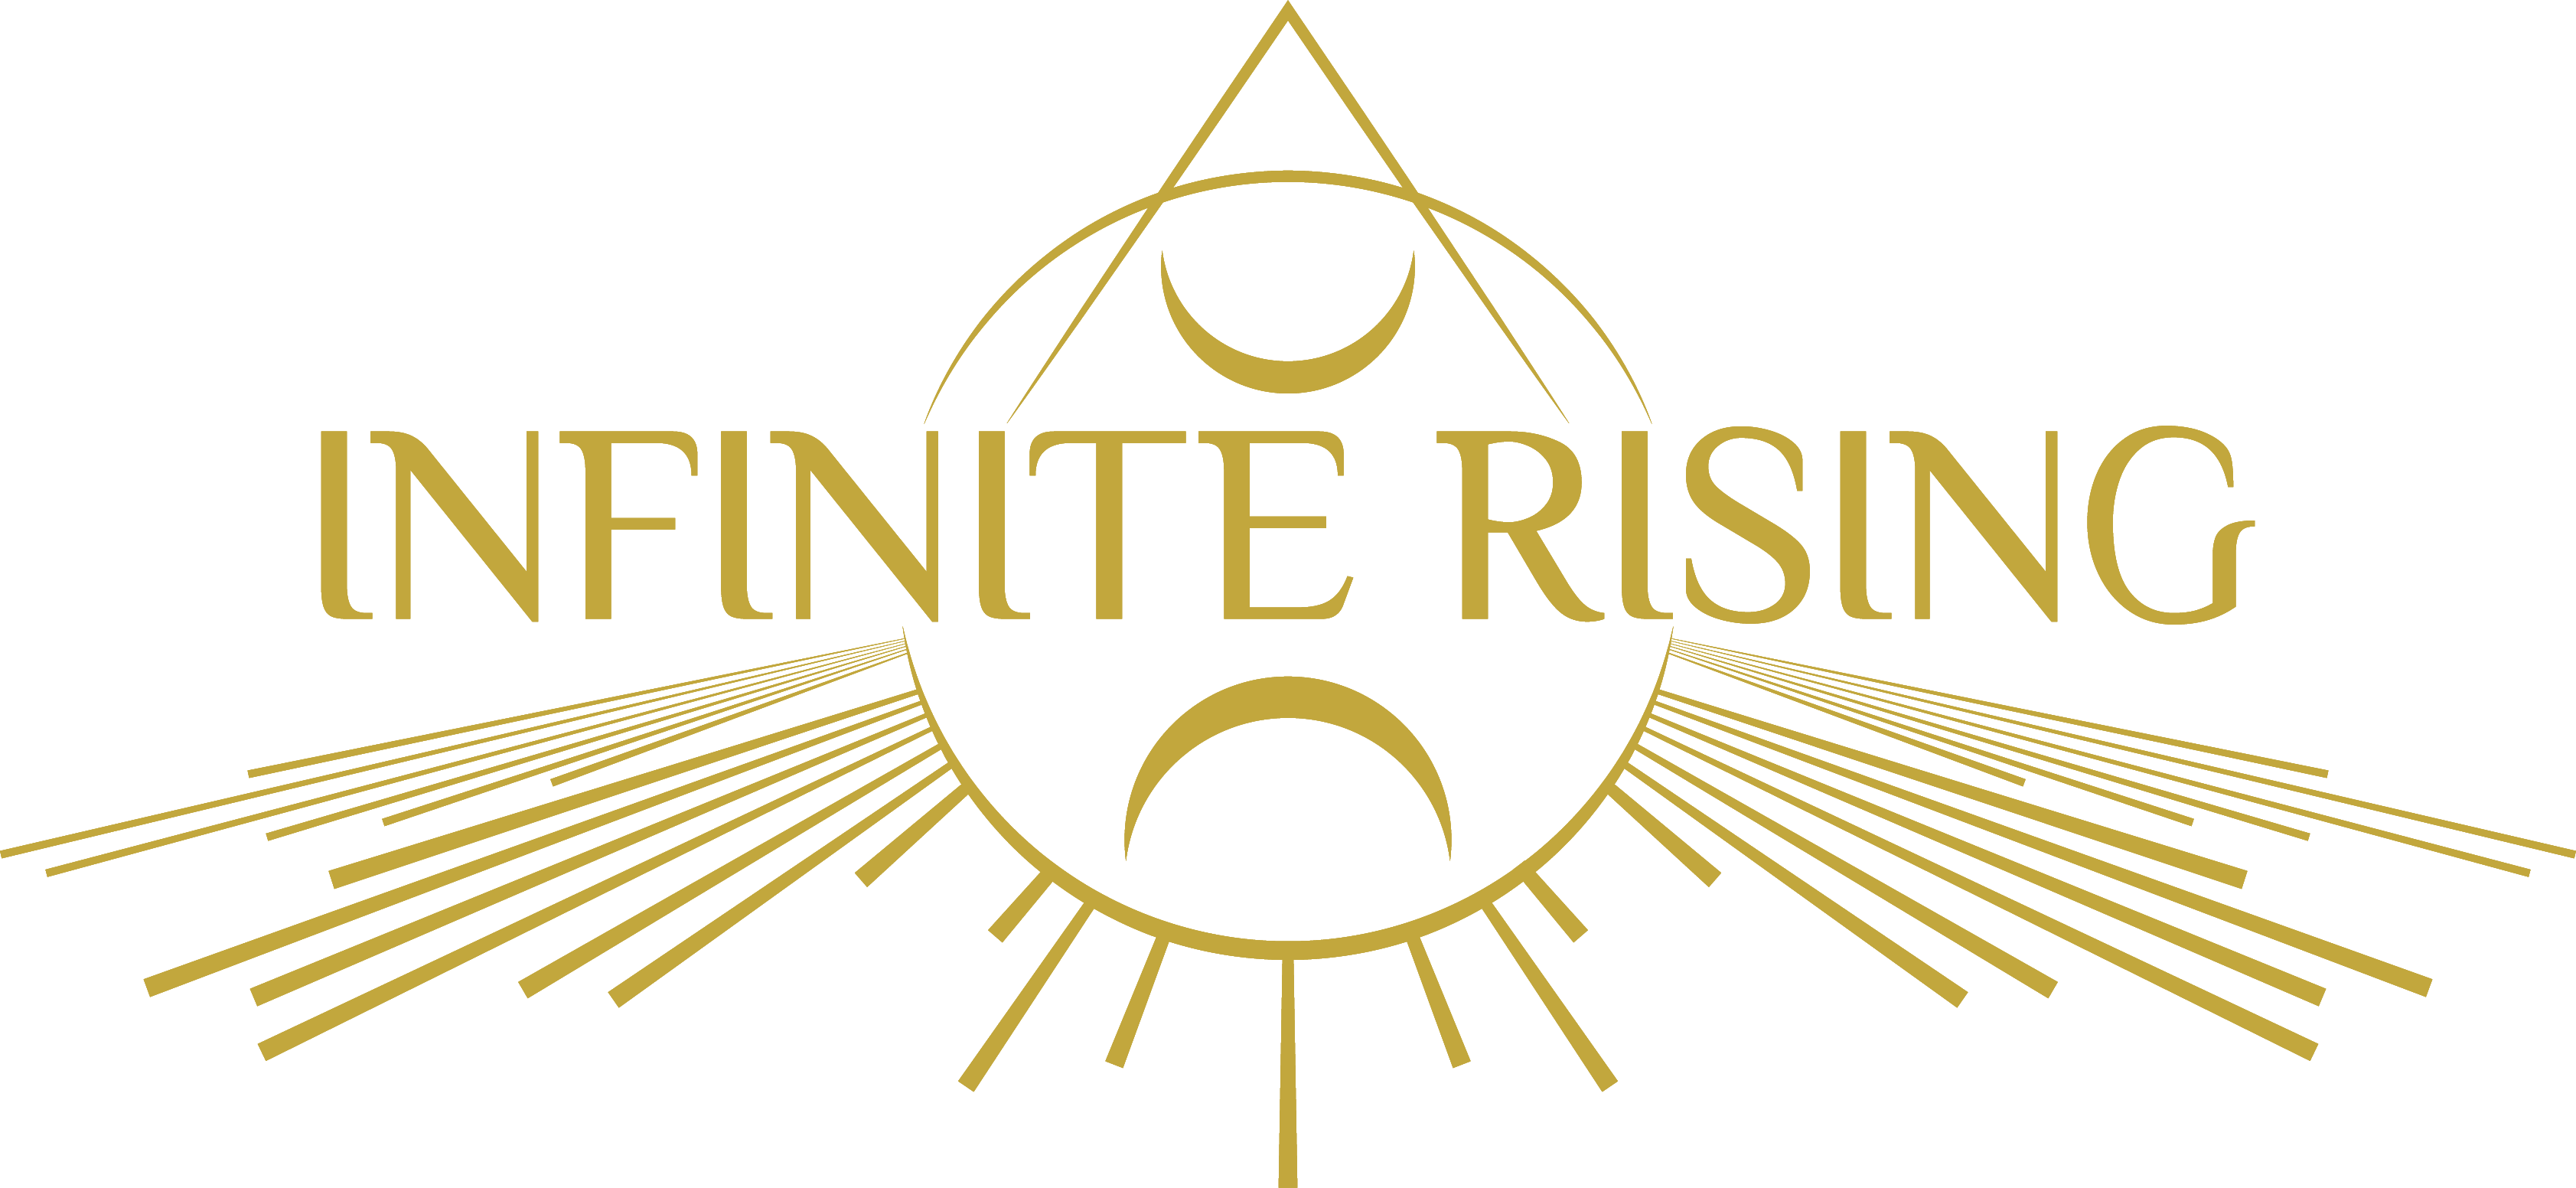 Infinite Rising gold logo